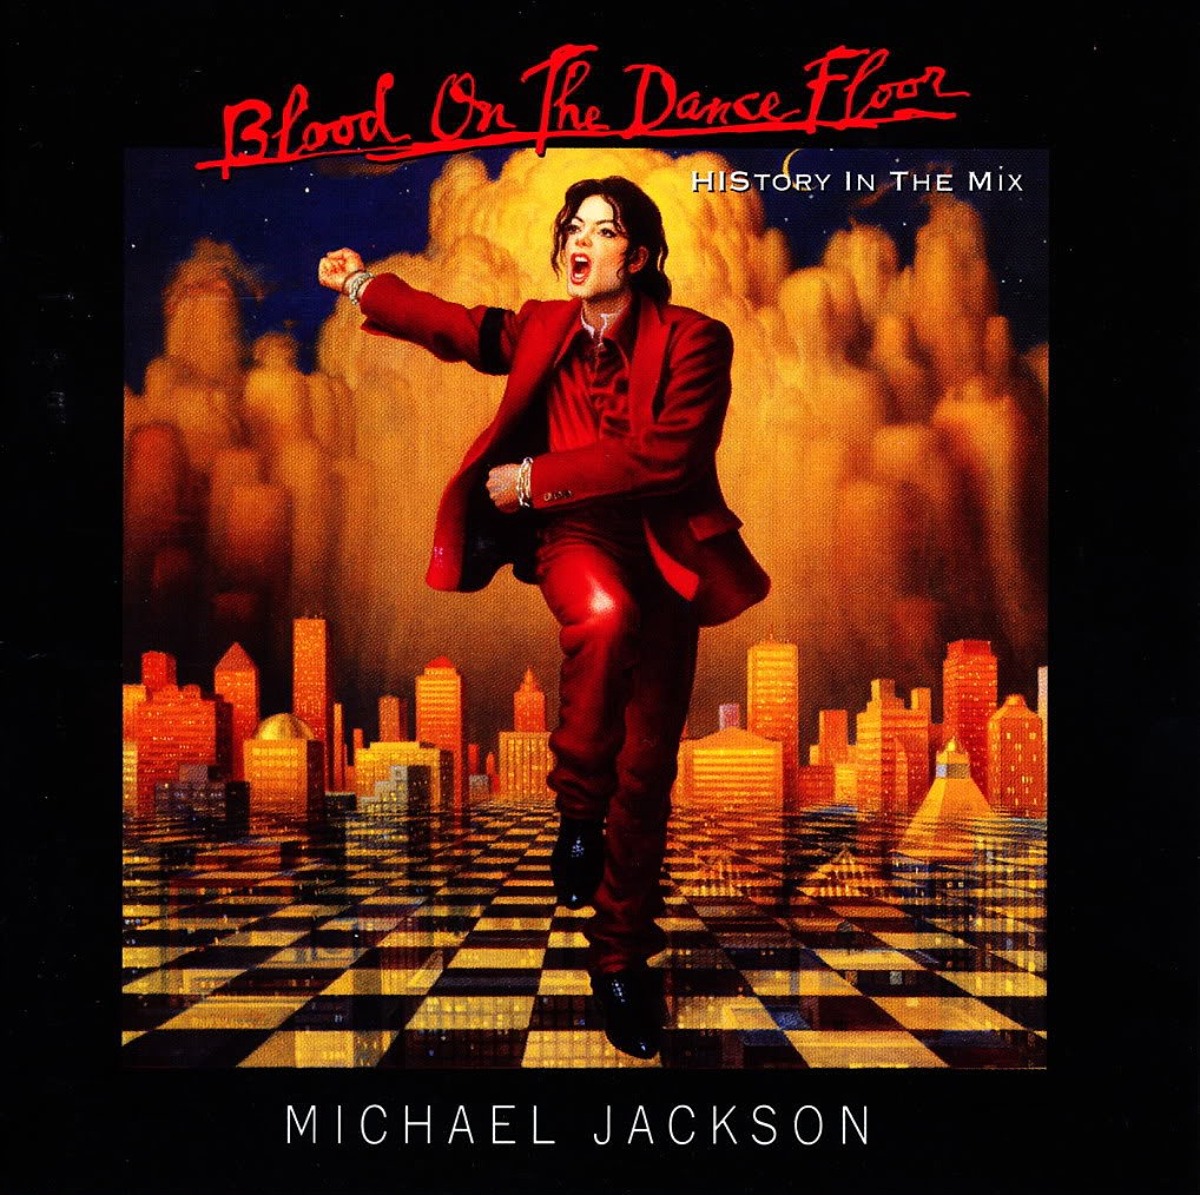 Cover des Albums "Blood on the Dance Floor" von Michael Jackson